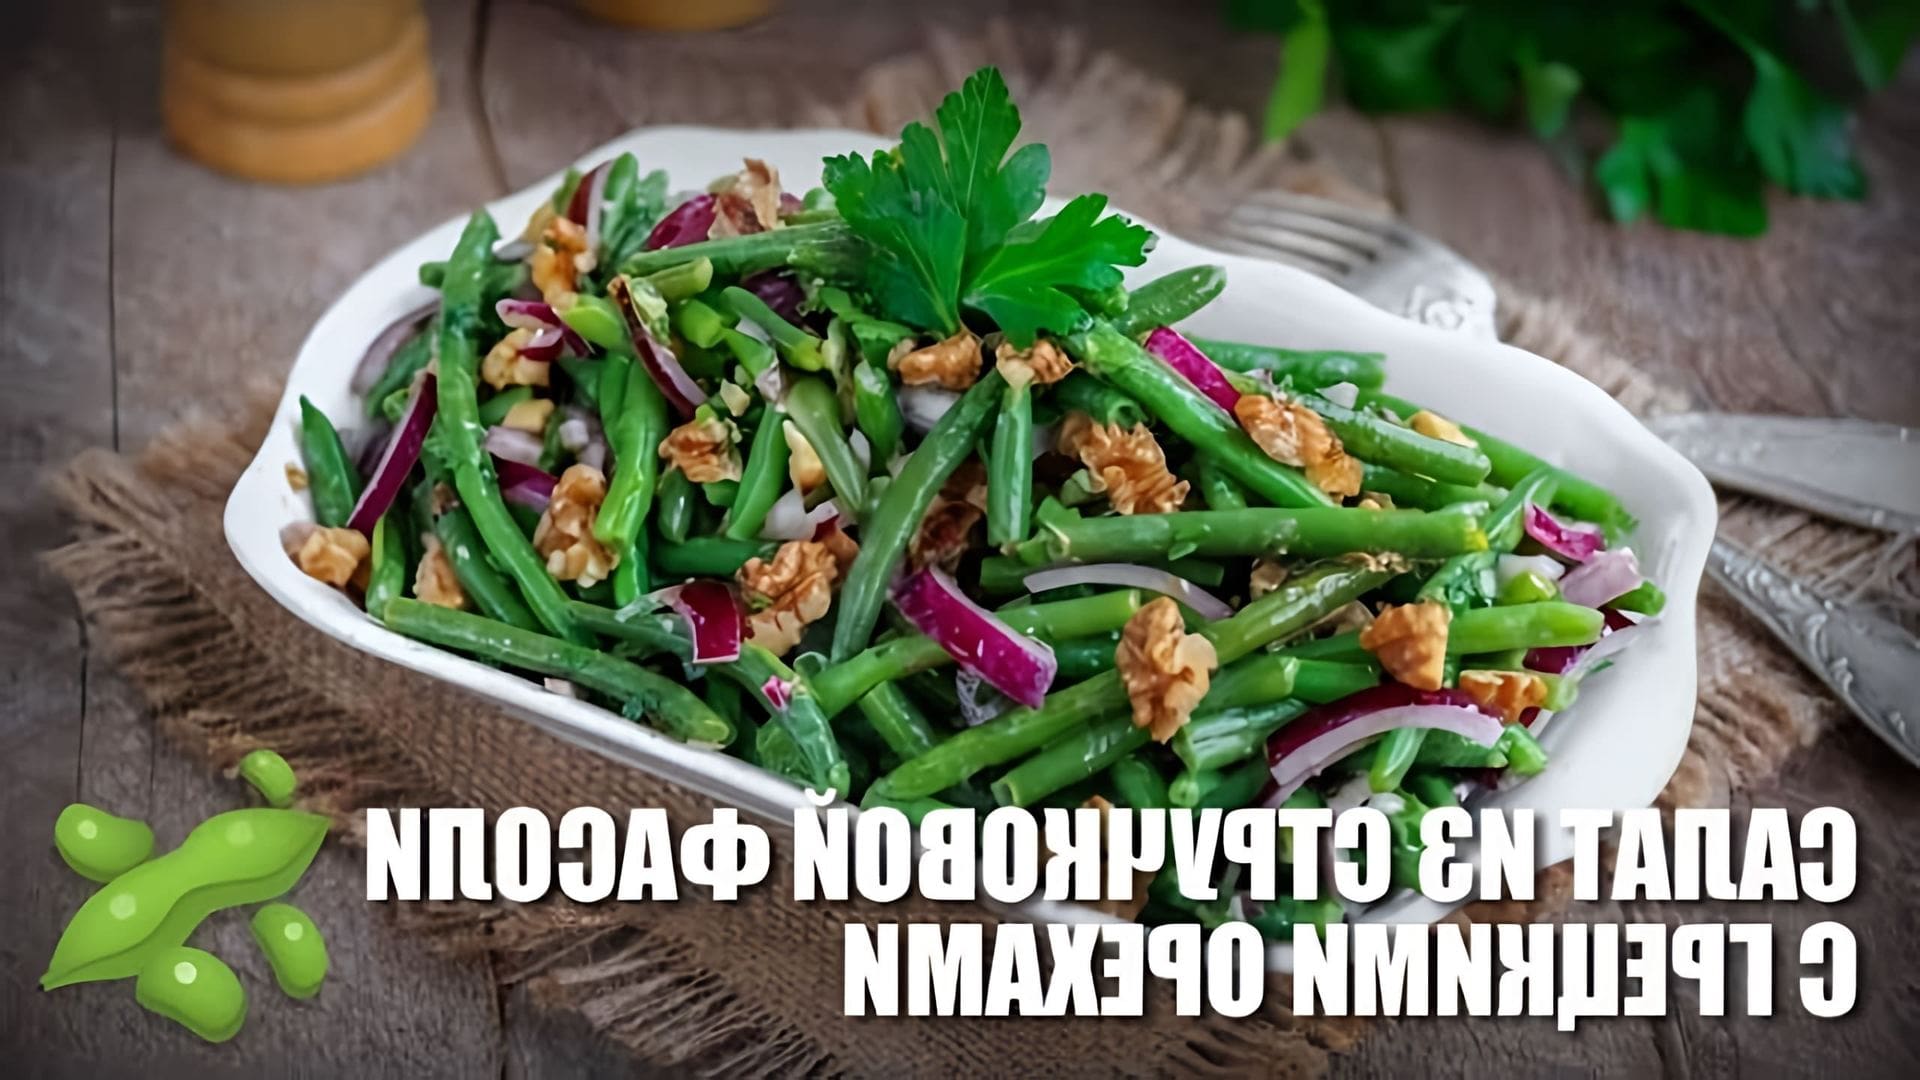 Салат из стручковой фасоли с грецкими орехами - это вкусное и полезное блюдо, которое можно приготовить в домашних условиях